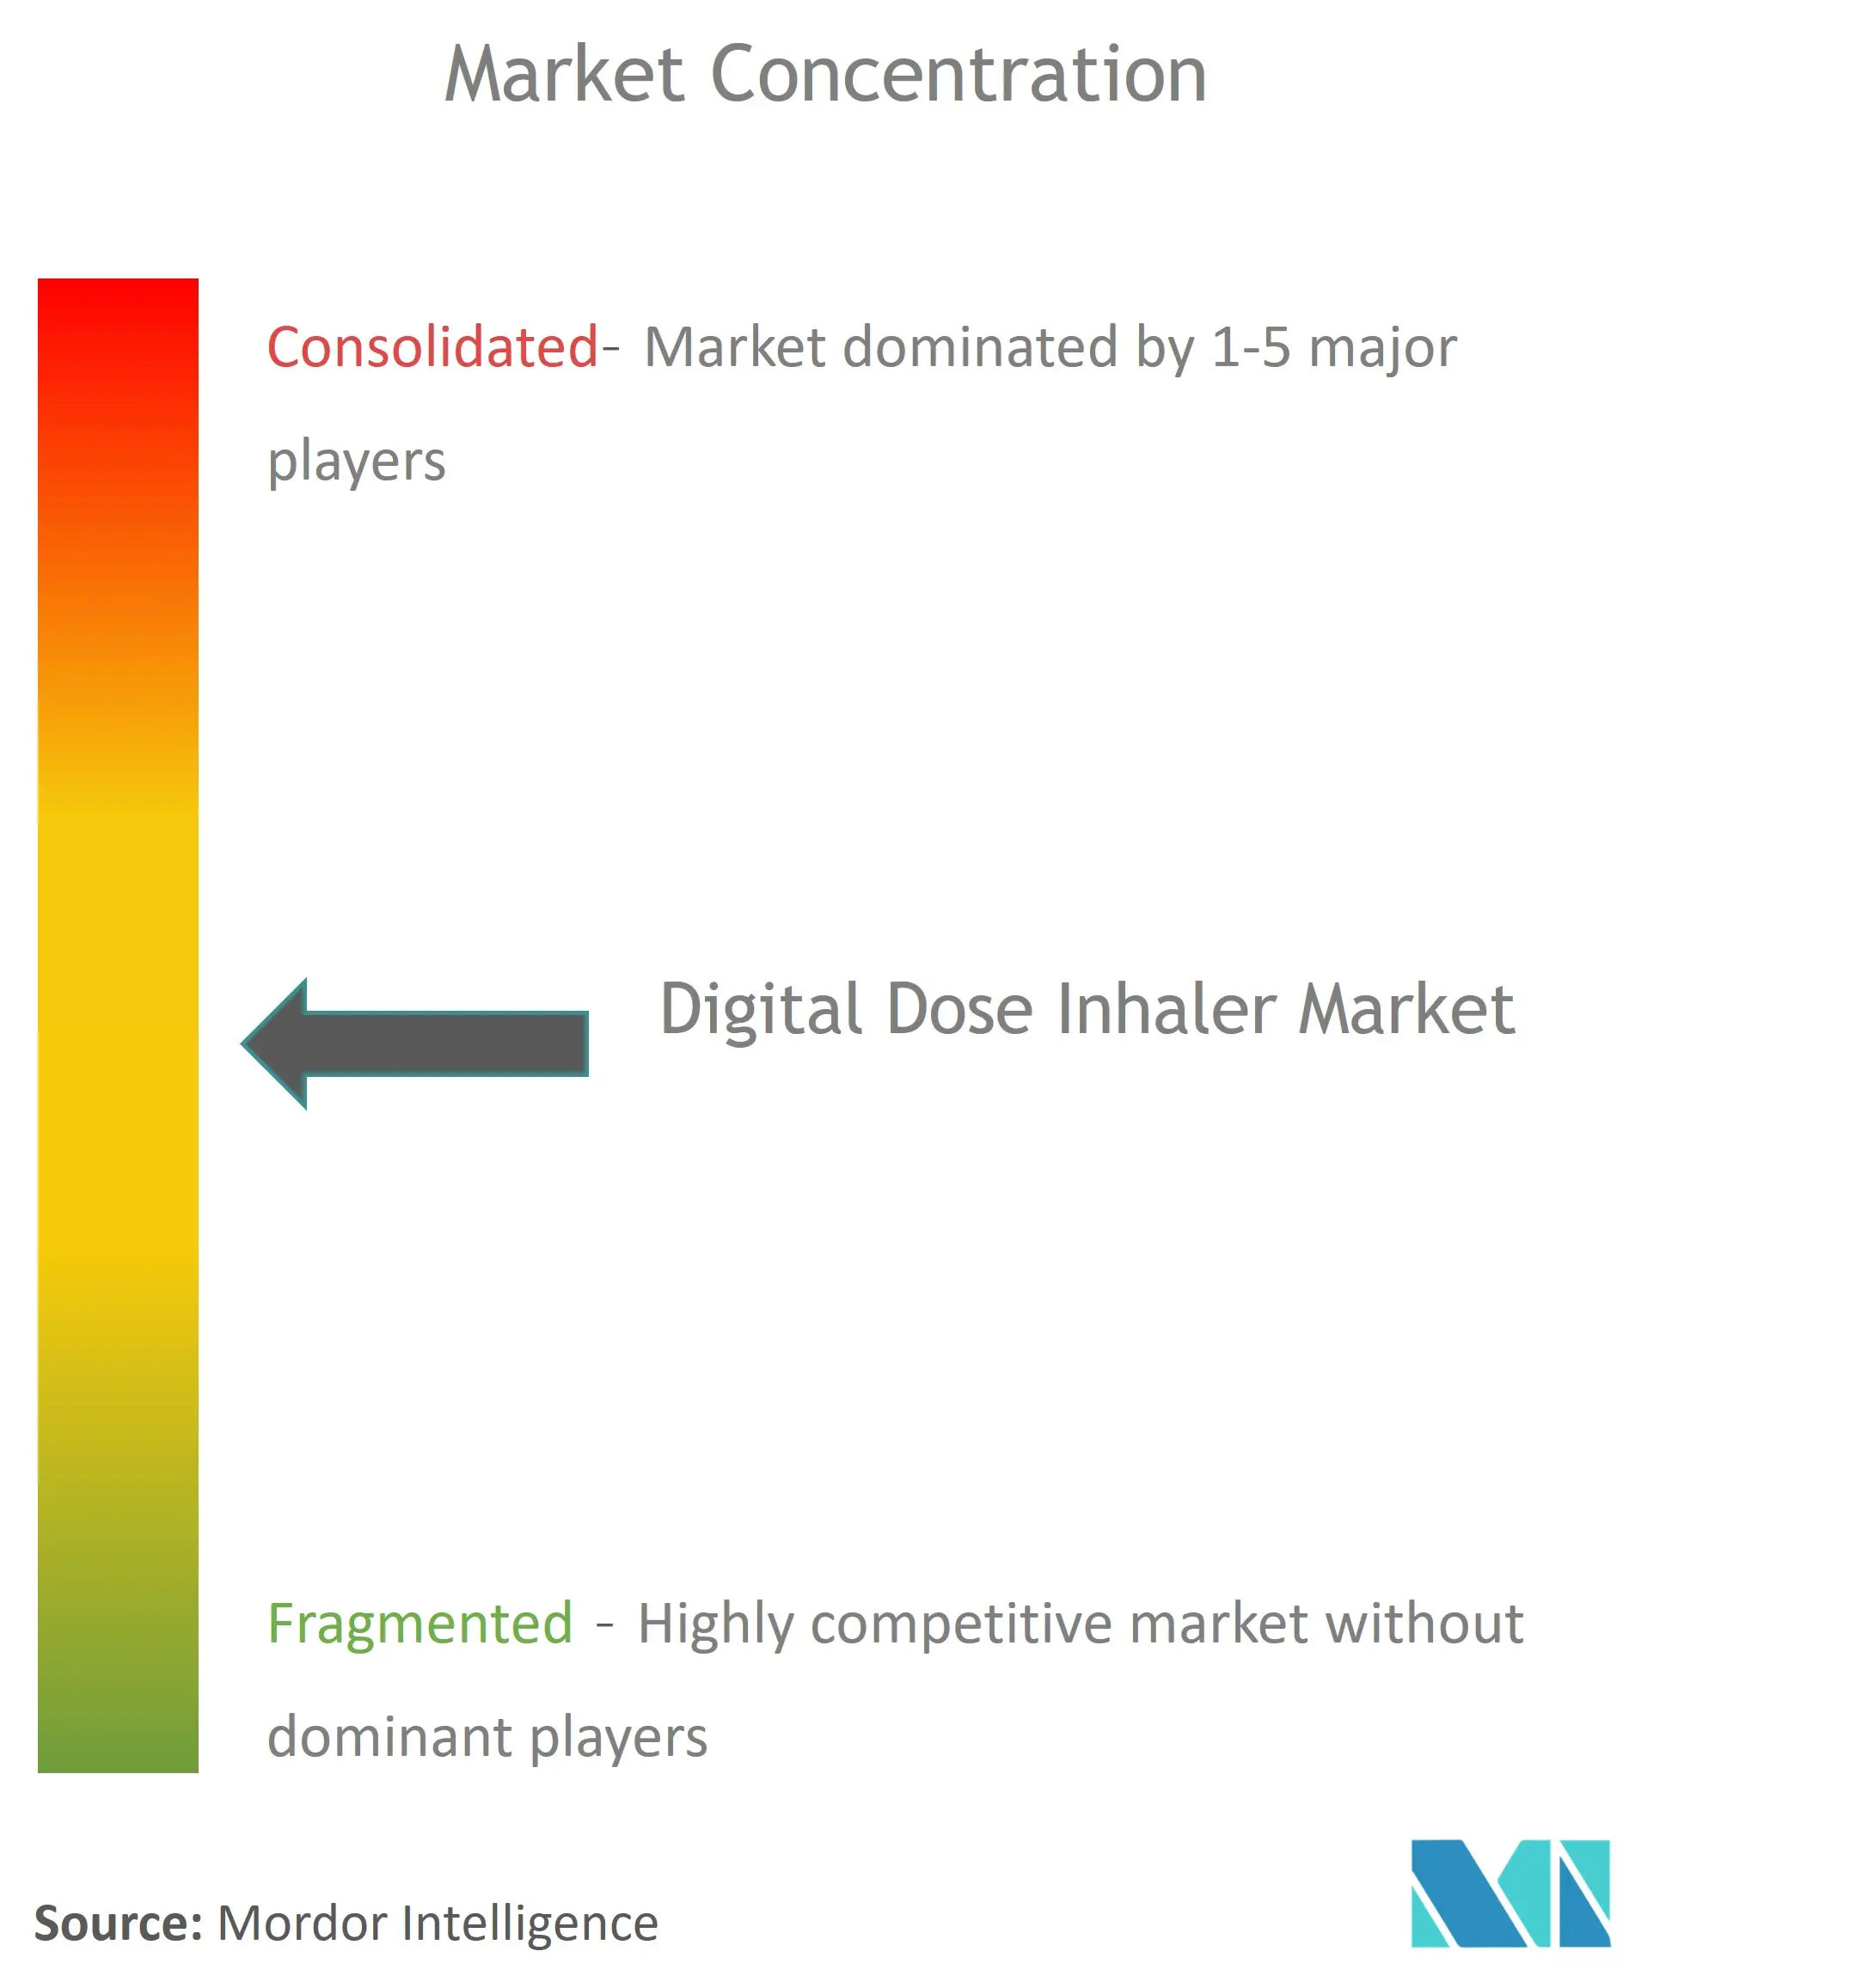 Inhalateur-dose numérique mondialConcentration du marché